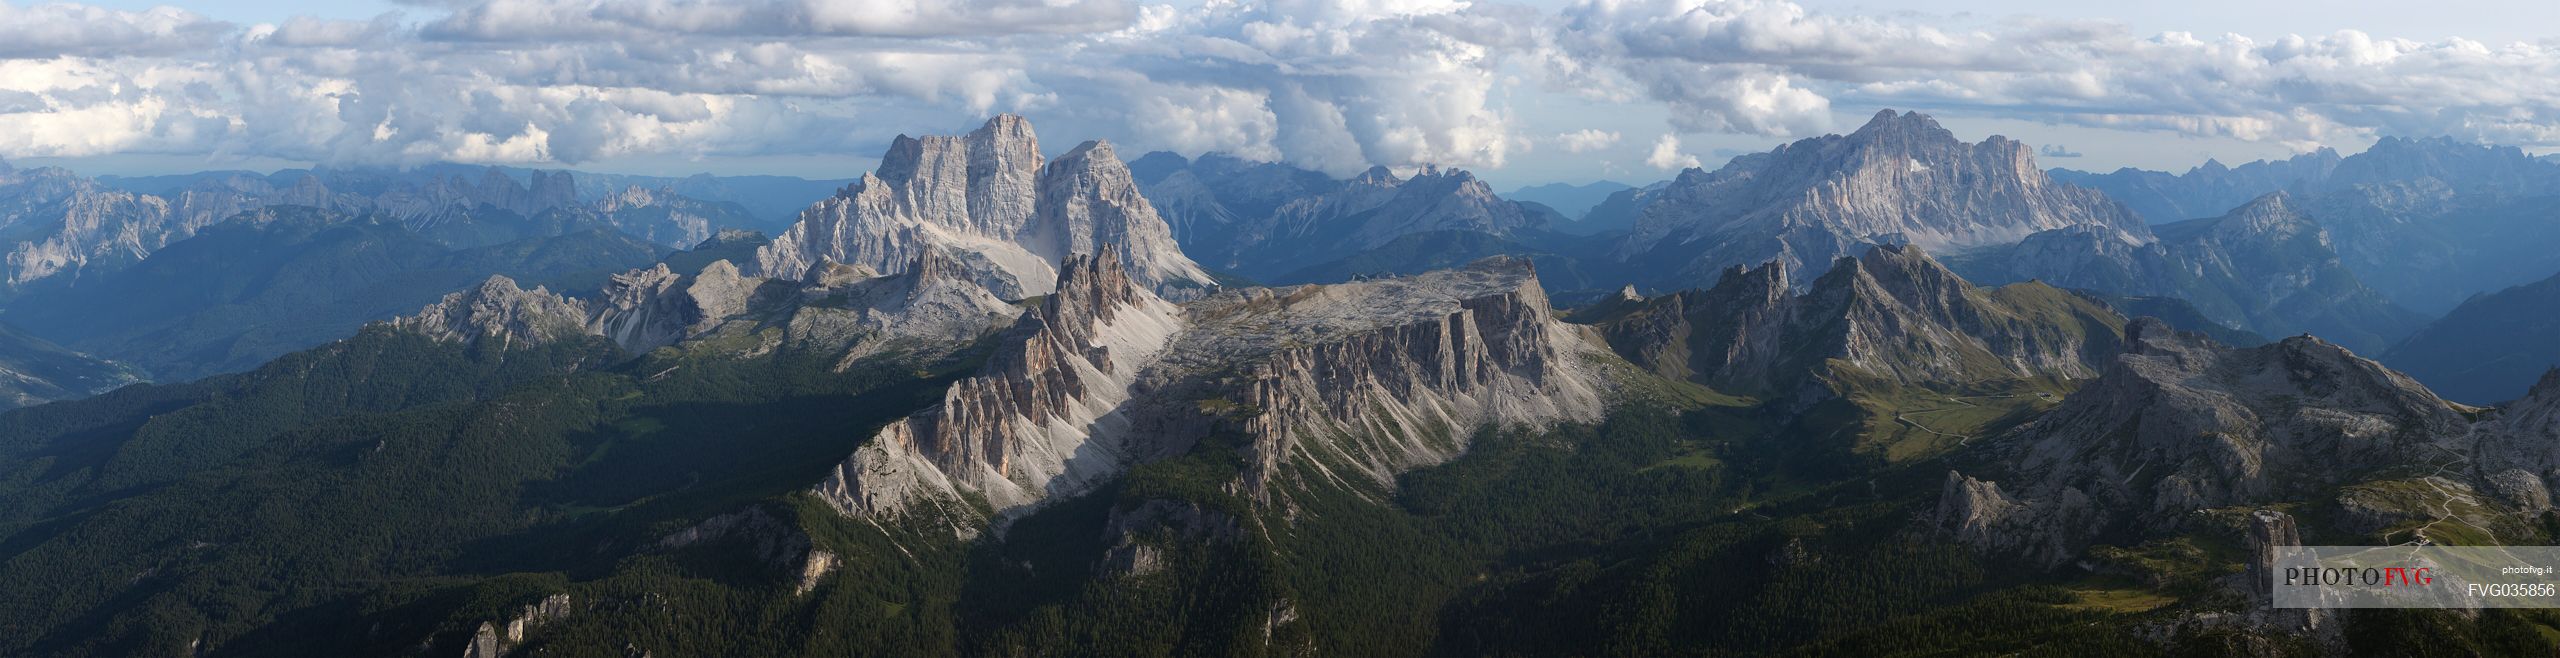 Panorama from the top of the Tofana di Mezzo mountain. Visible from left to right: Pelmo, Croda da Lago, Lastoi de Formin, Civetta, Cernera, Passo Giau, Gusela di Passo Giau, Nuvolau, Cinque Torri, dolomites, Cortina d'Ampezzo, Italy, Europe